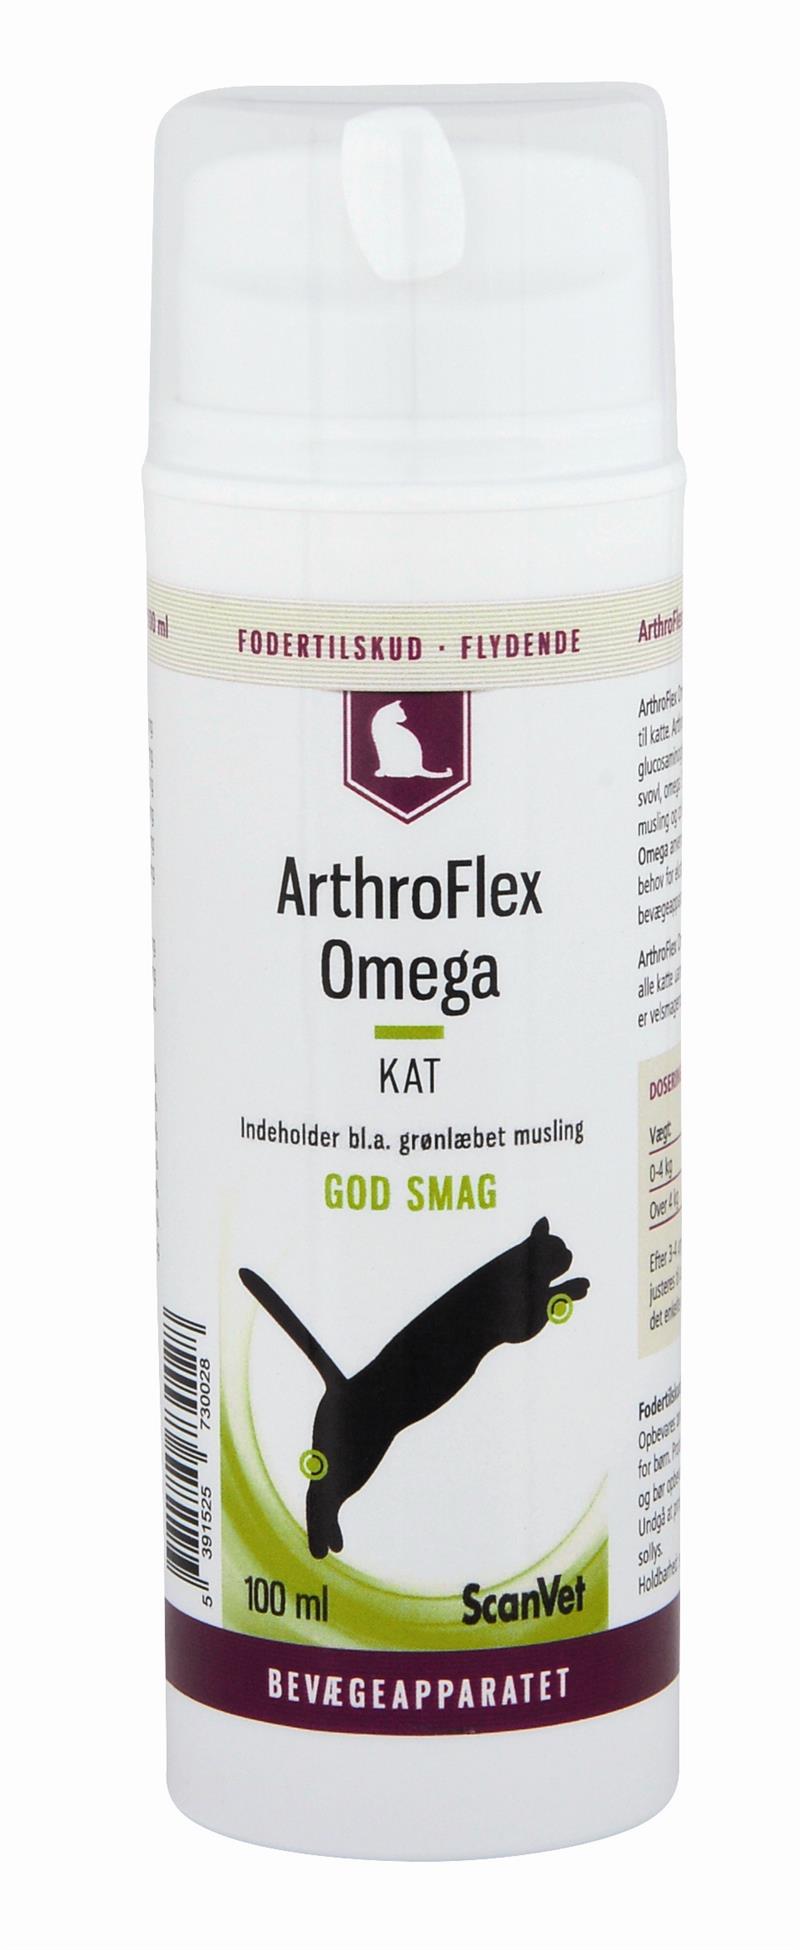 Arthroflex Omega, Fodertilskud til vedligehold og optimering af bevægeapperatet hos